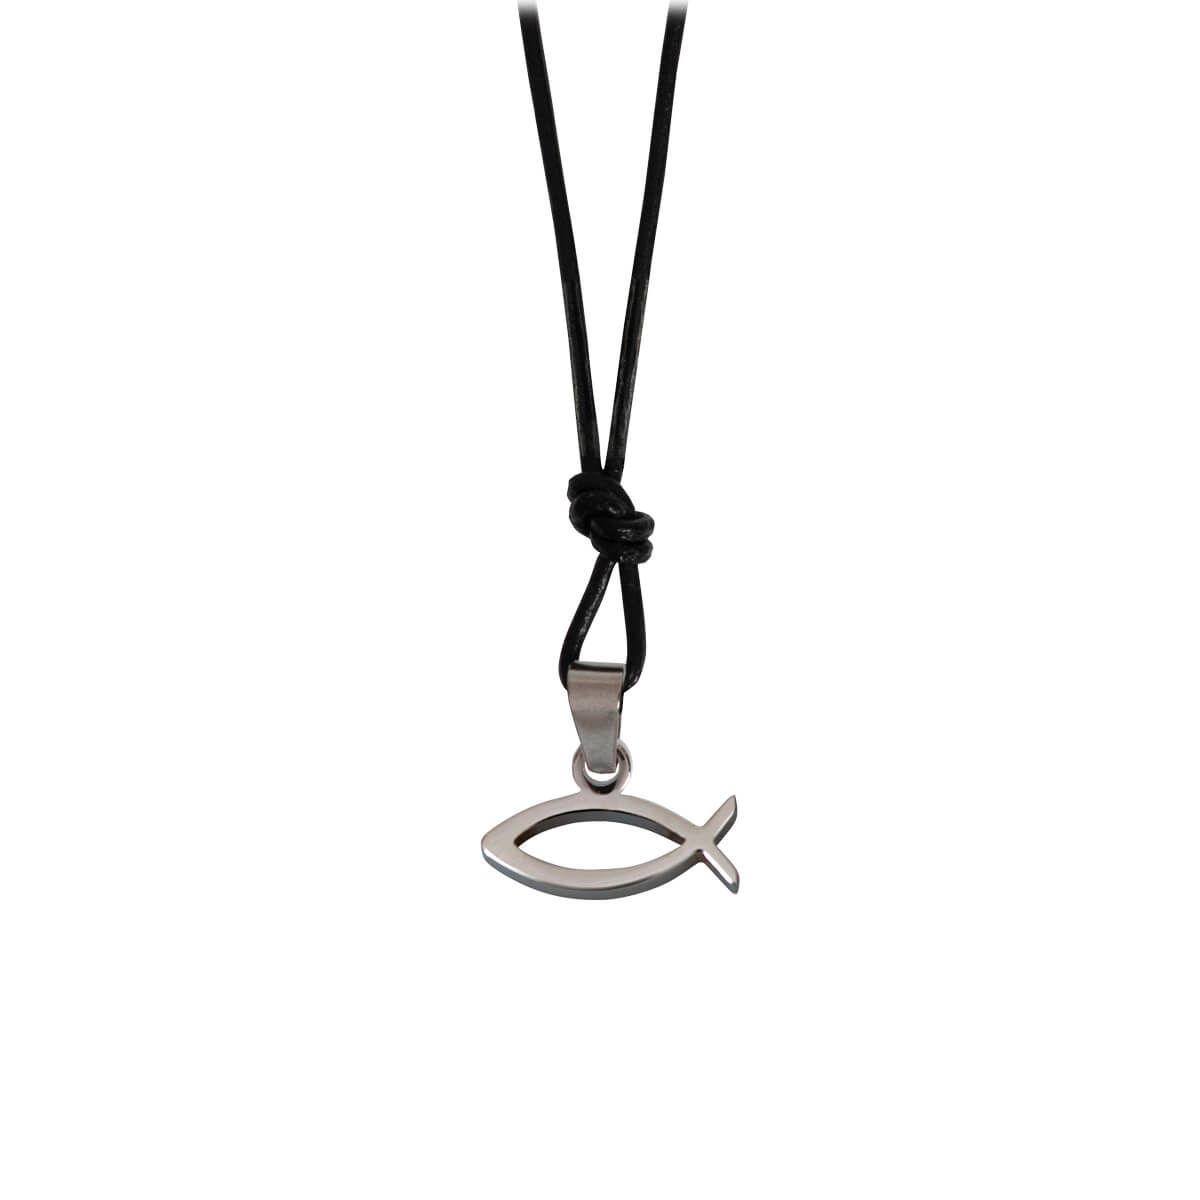 Halsband Fischsymbol